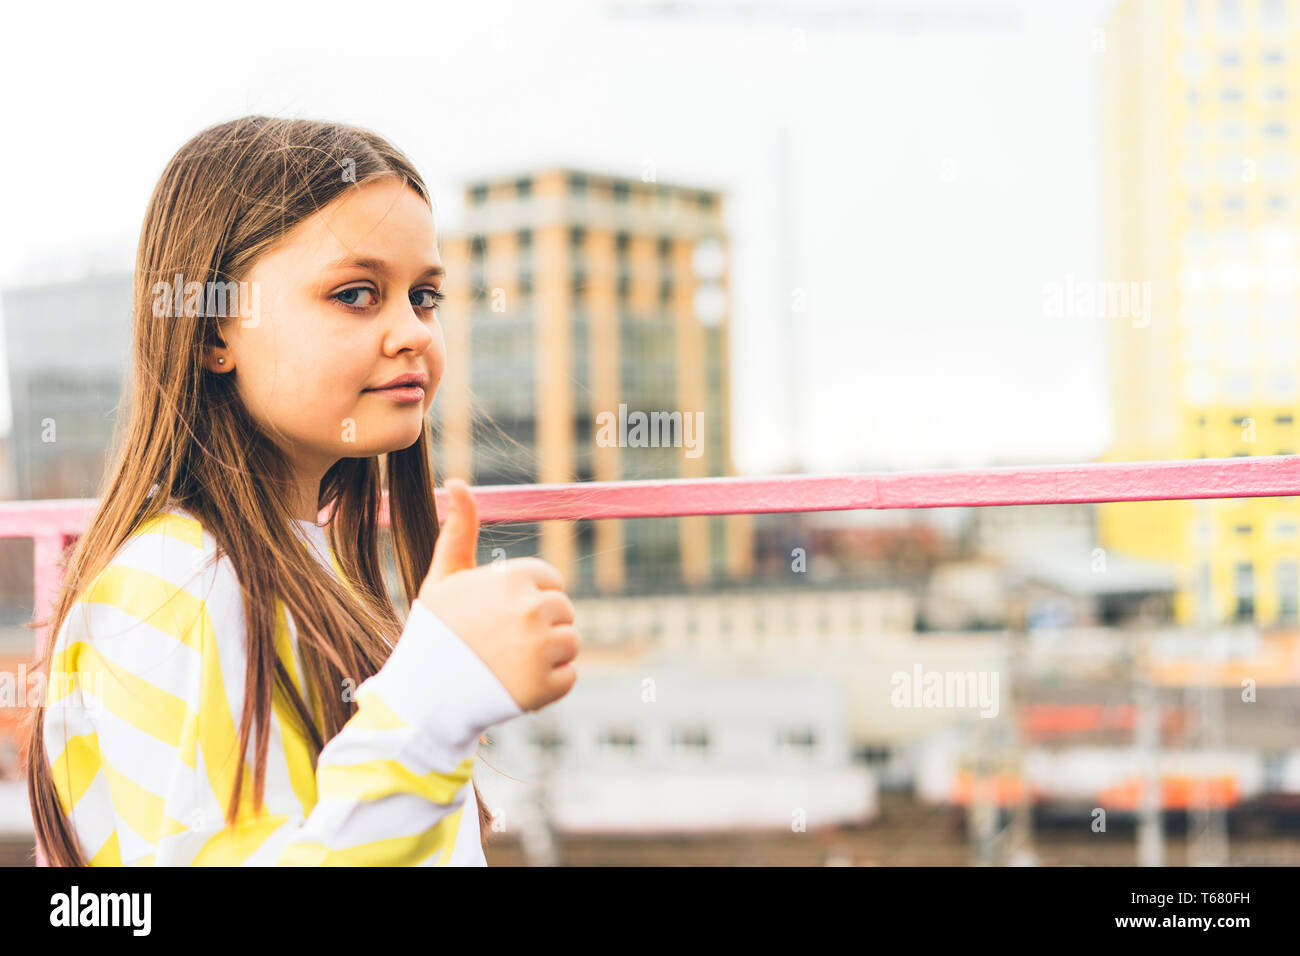 Una ragazza adolescente in un maglione giallo si erge contro lo sfondo del paesaggio urbano e mostra una mano con un dito sollevato Foto Stock